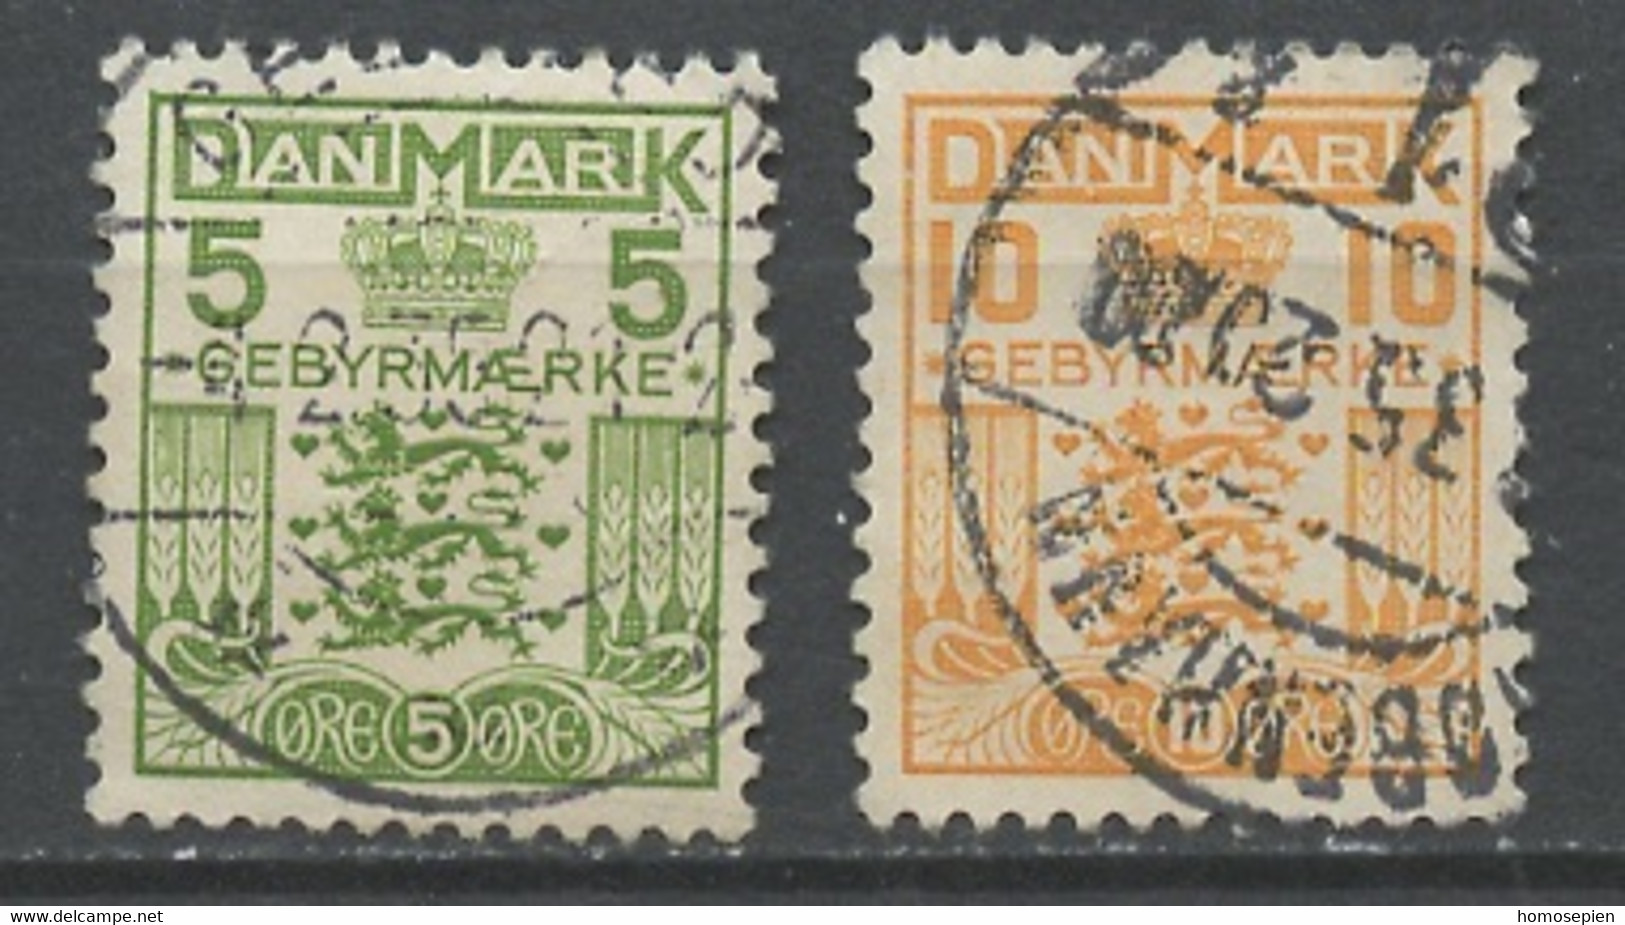 Danemark - Dänemark - Denmark Taxe 1934-53 Y&T N°T34 à 35 - Michel N°P17 à 18 (o) - Armoirie - Segnatasse